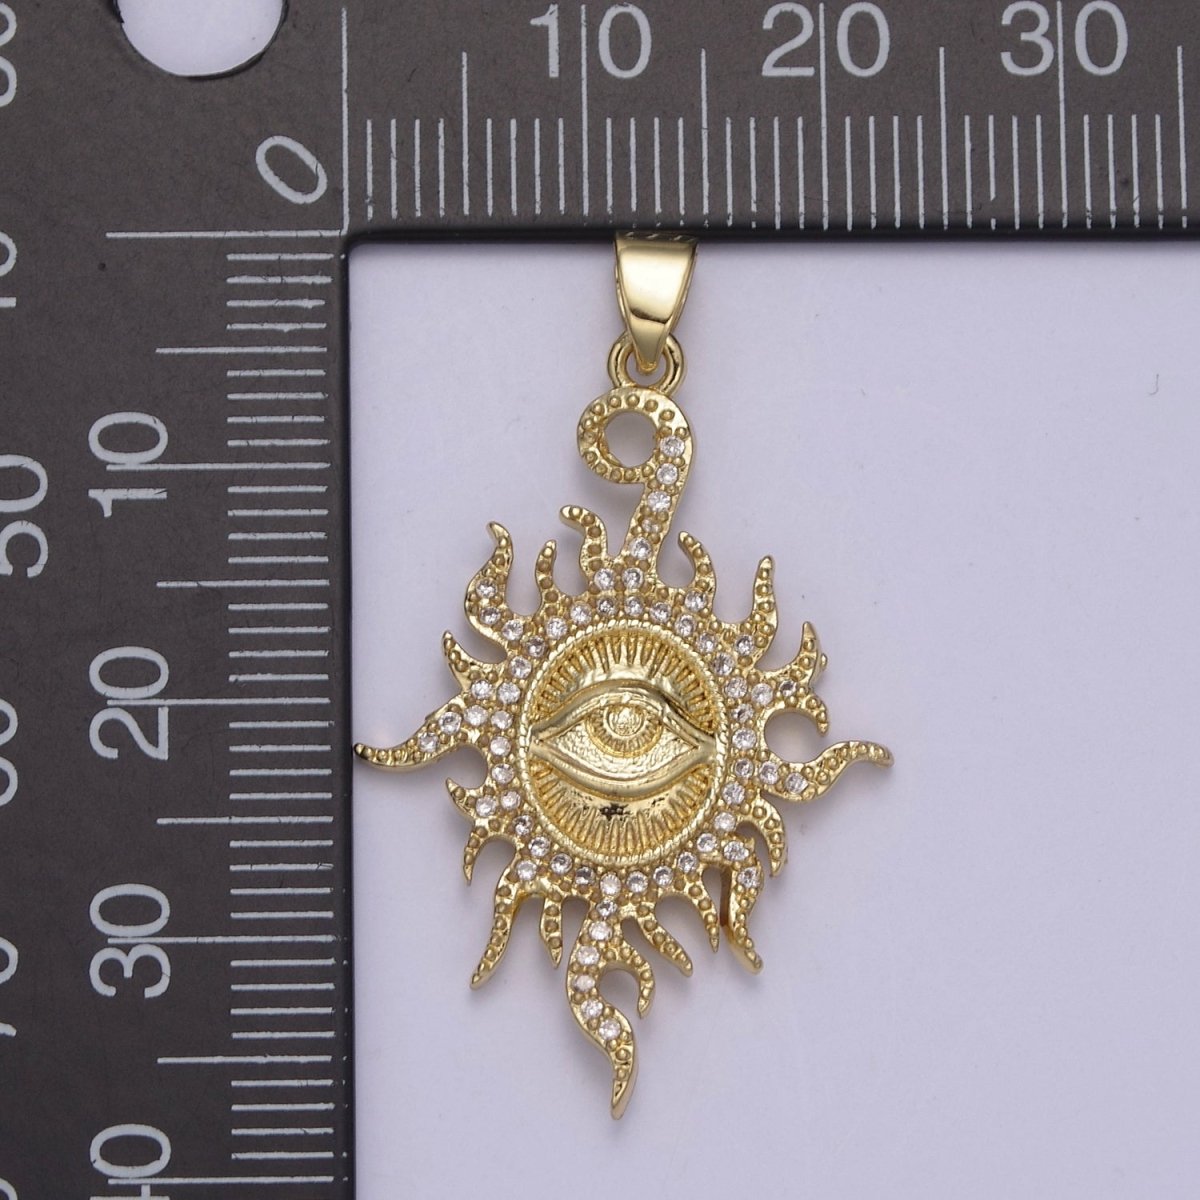 Micro Pave Illuminati Pendant All Seeing Eye of Providence Micro Pave Illuminati Charm Necklace Sun Burst Oval Medallion H-869 - DLUXCA